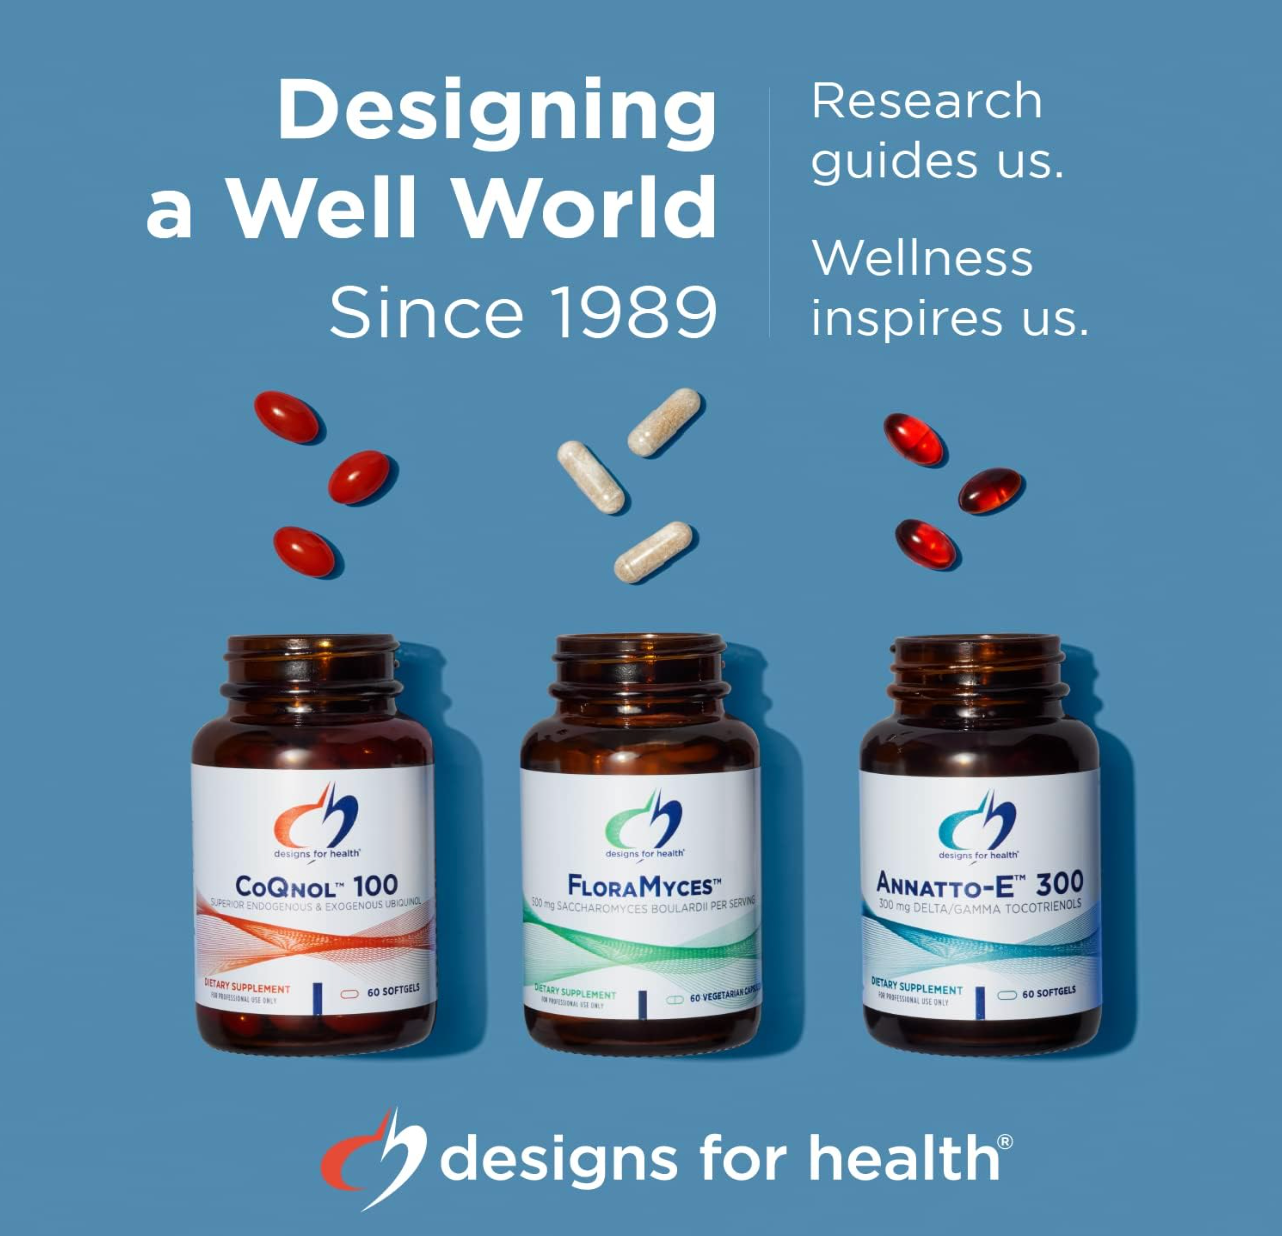 Designs for Health Quercetin + Nettles